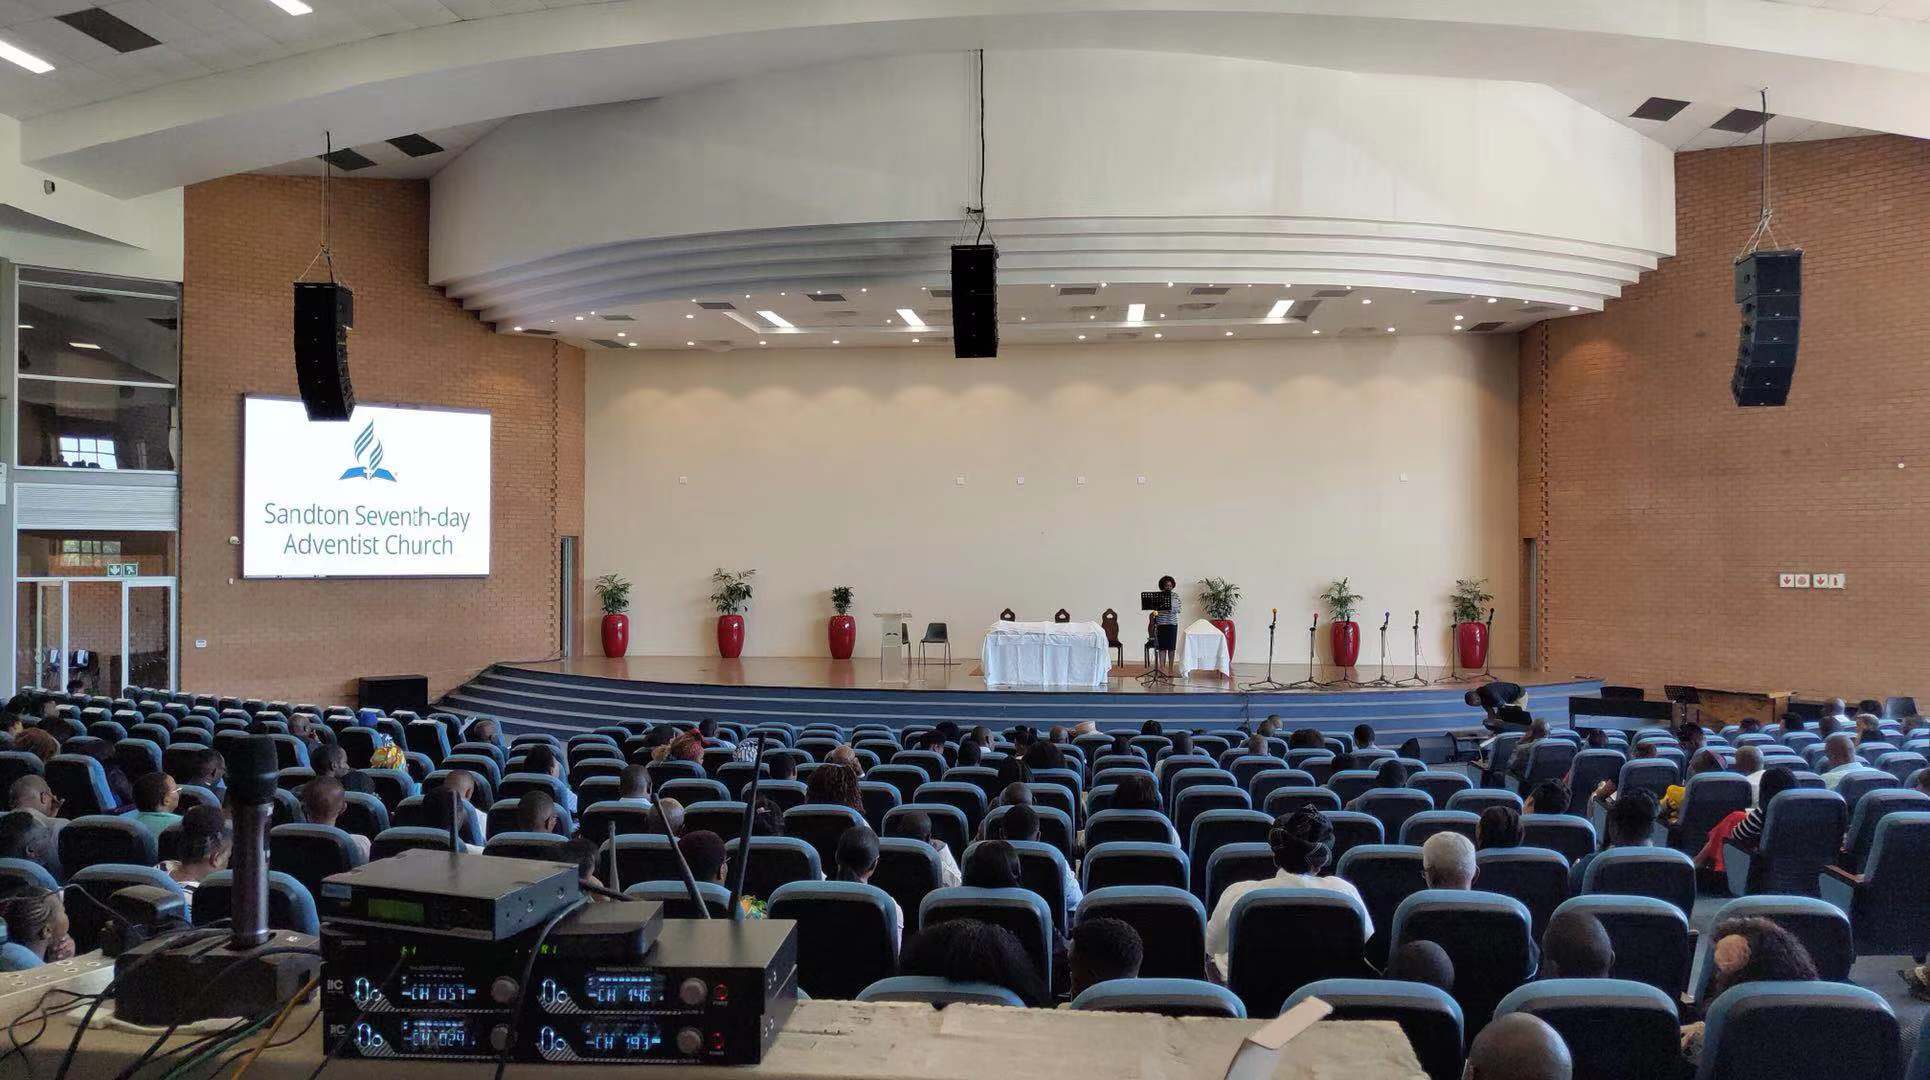 Светодиодные экраны и звуковая система itc были установлены в церкви Сандтон в Южной Африке